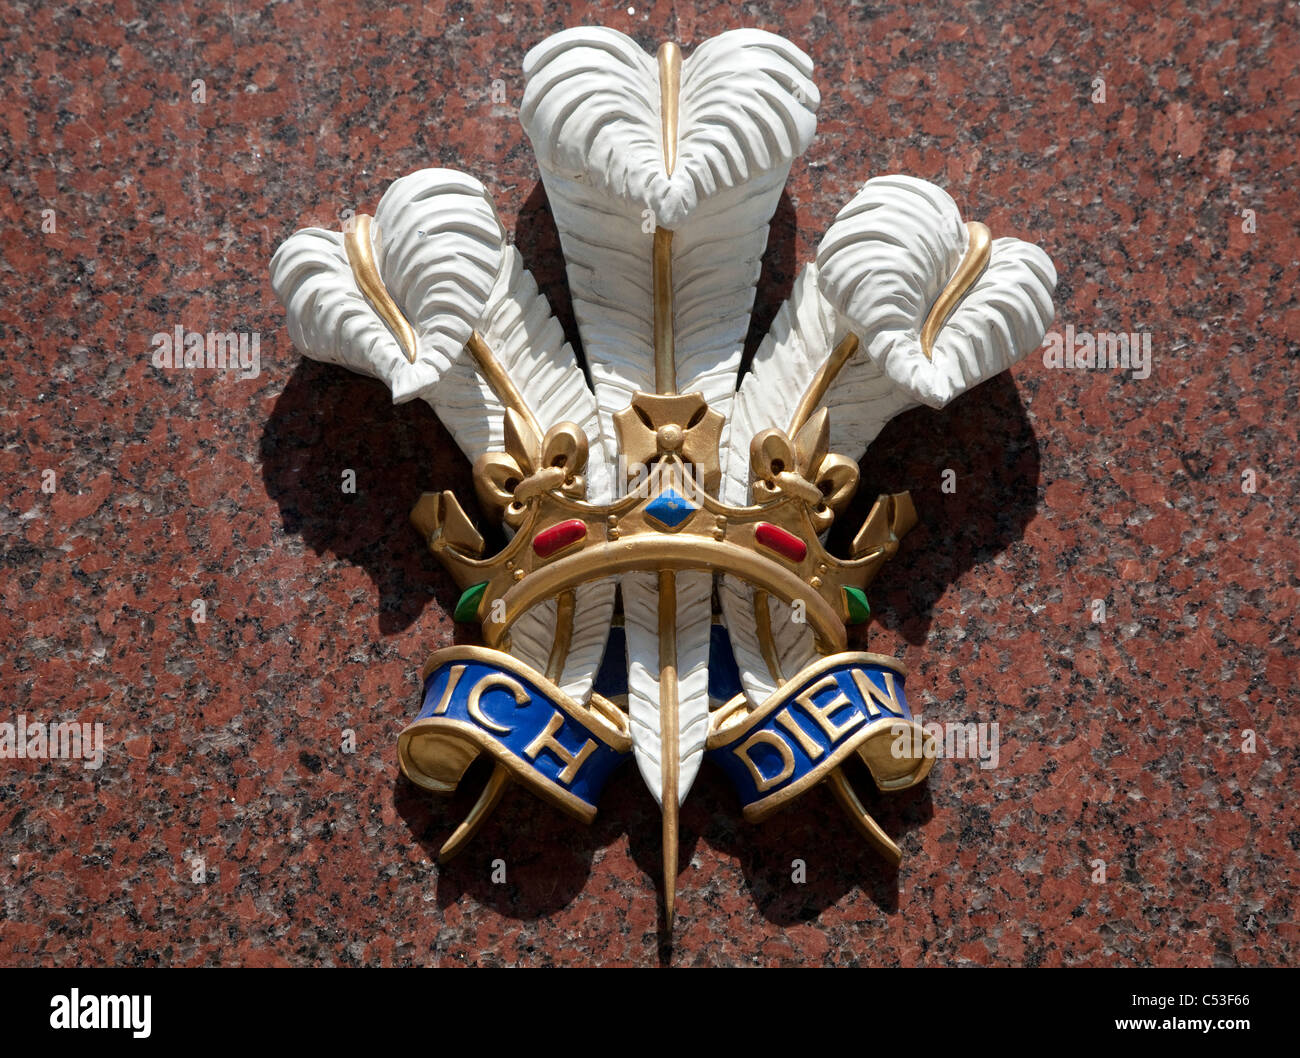 Prince Of Wales Federn und Motto Ich Dien (I Serve) auf Bentley & Skinner Juweliere, London Stockfoto